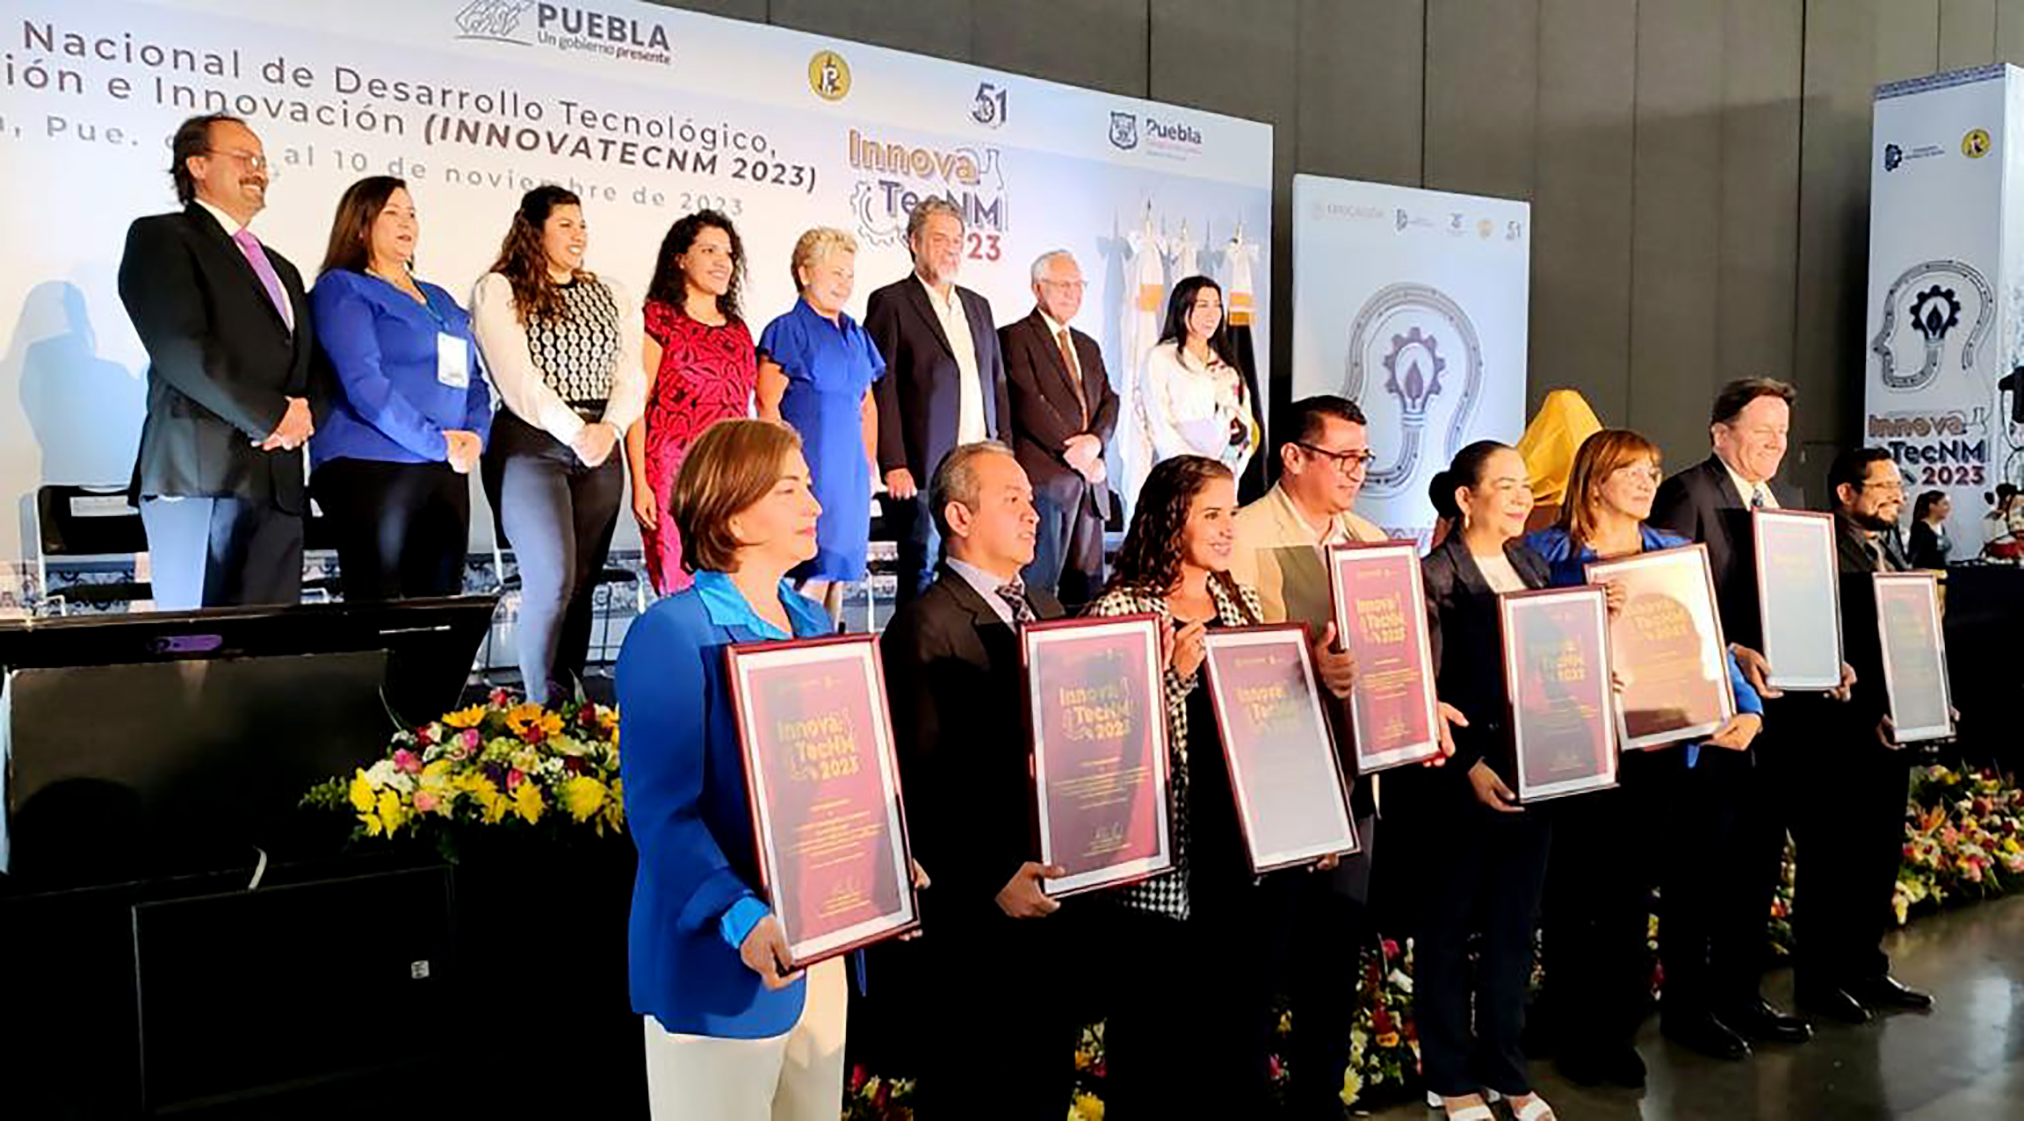 En Puebla, SEP pone en marcha la Cumbre Nacional de Desarrollo Tecnológico, Investigación e Innovación 2023